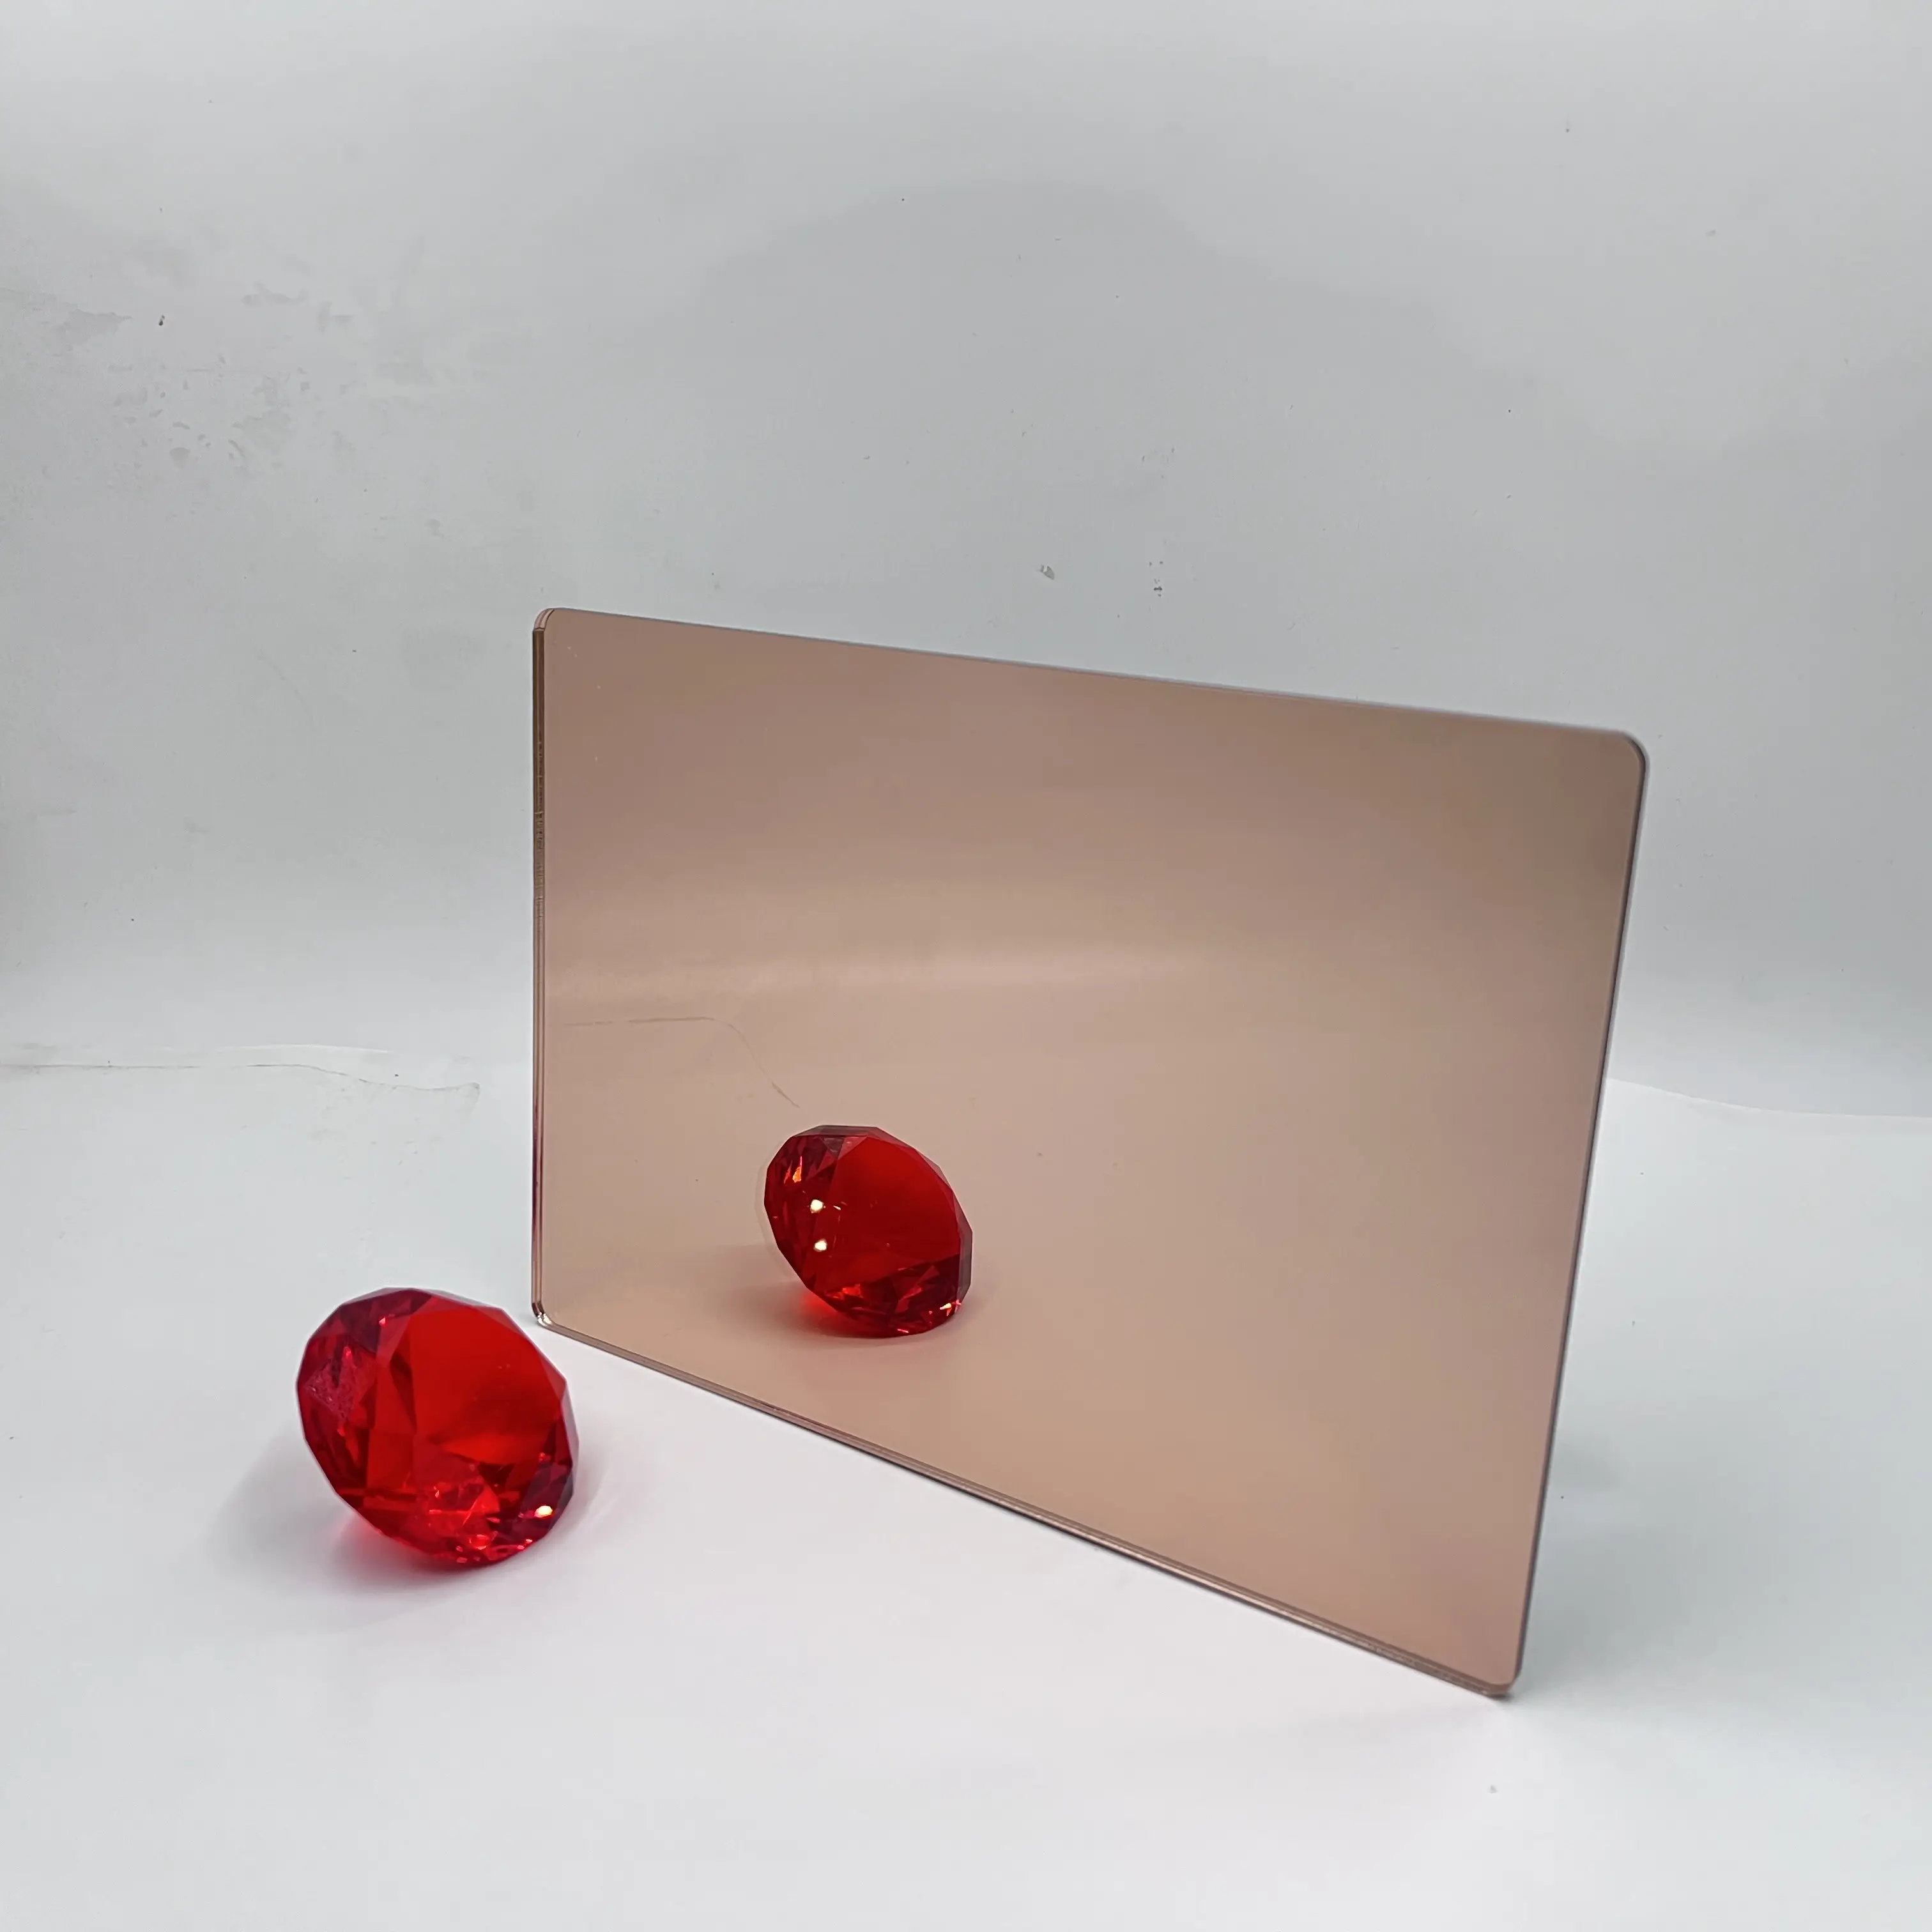 Gương Tấm Acrylic 3D Treo Tường Hiện Đại Gương Vô Cực Bằng Nhựa Có Đèn LED Ảo Ảnh Theo Xu Hướng Hai Chiều Để Trang Trí Nhà Cửa